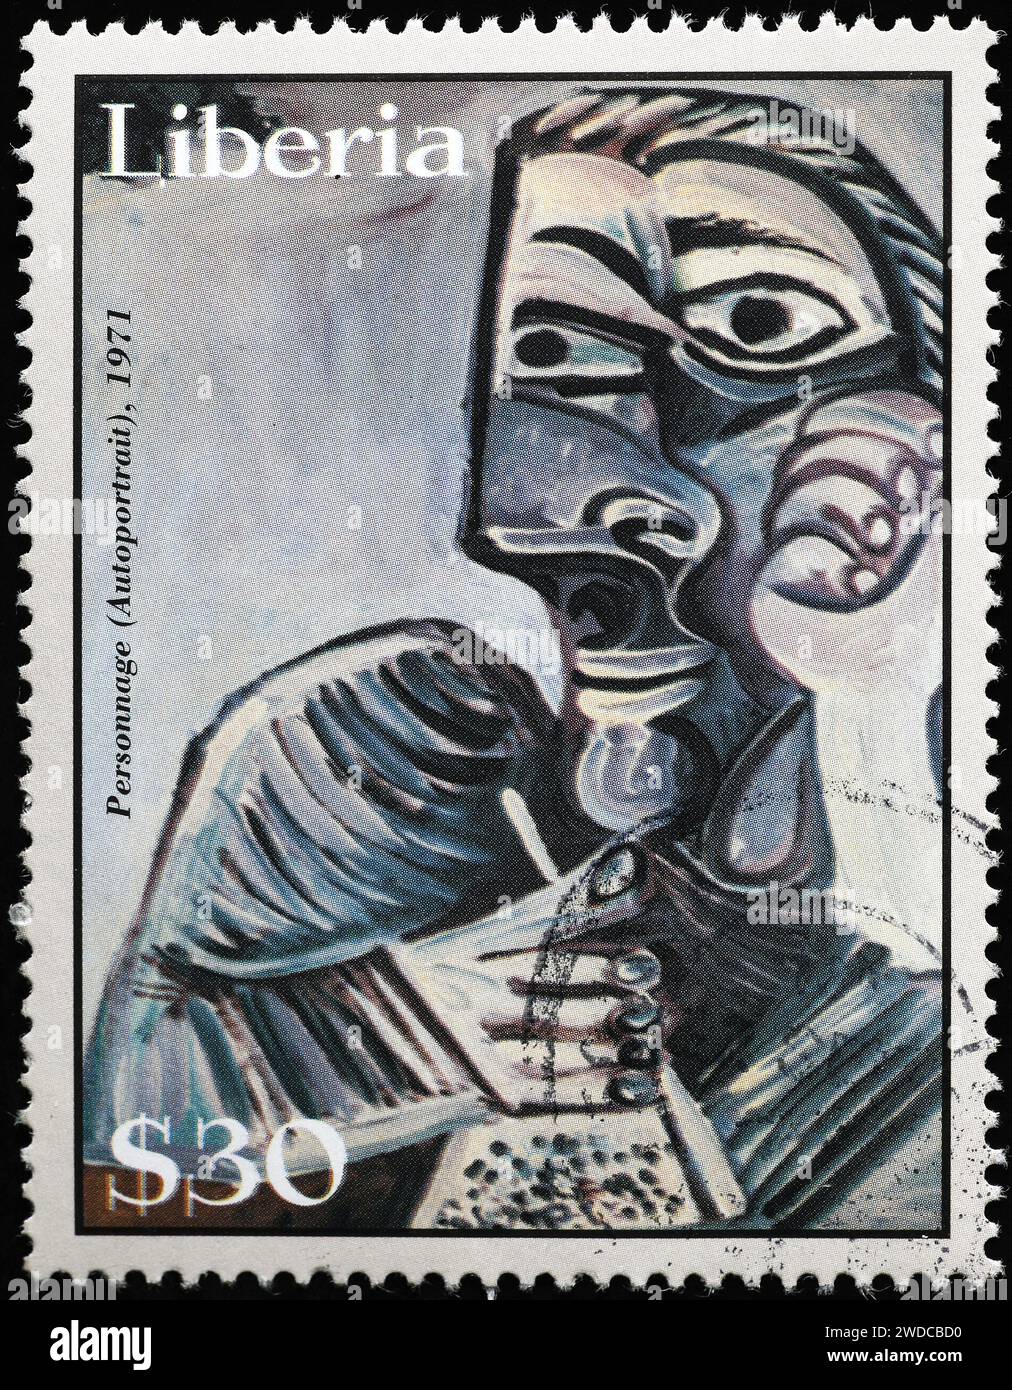 "Personnage" von Pablo Picasso auf Briefmarke Stockfoto